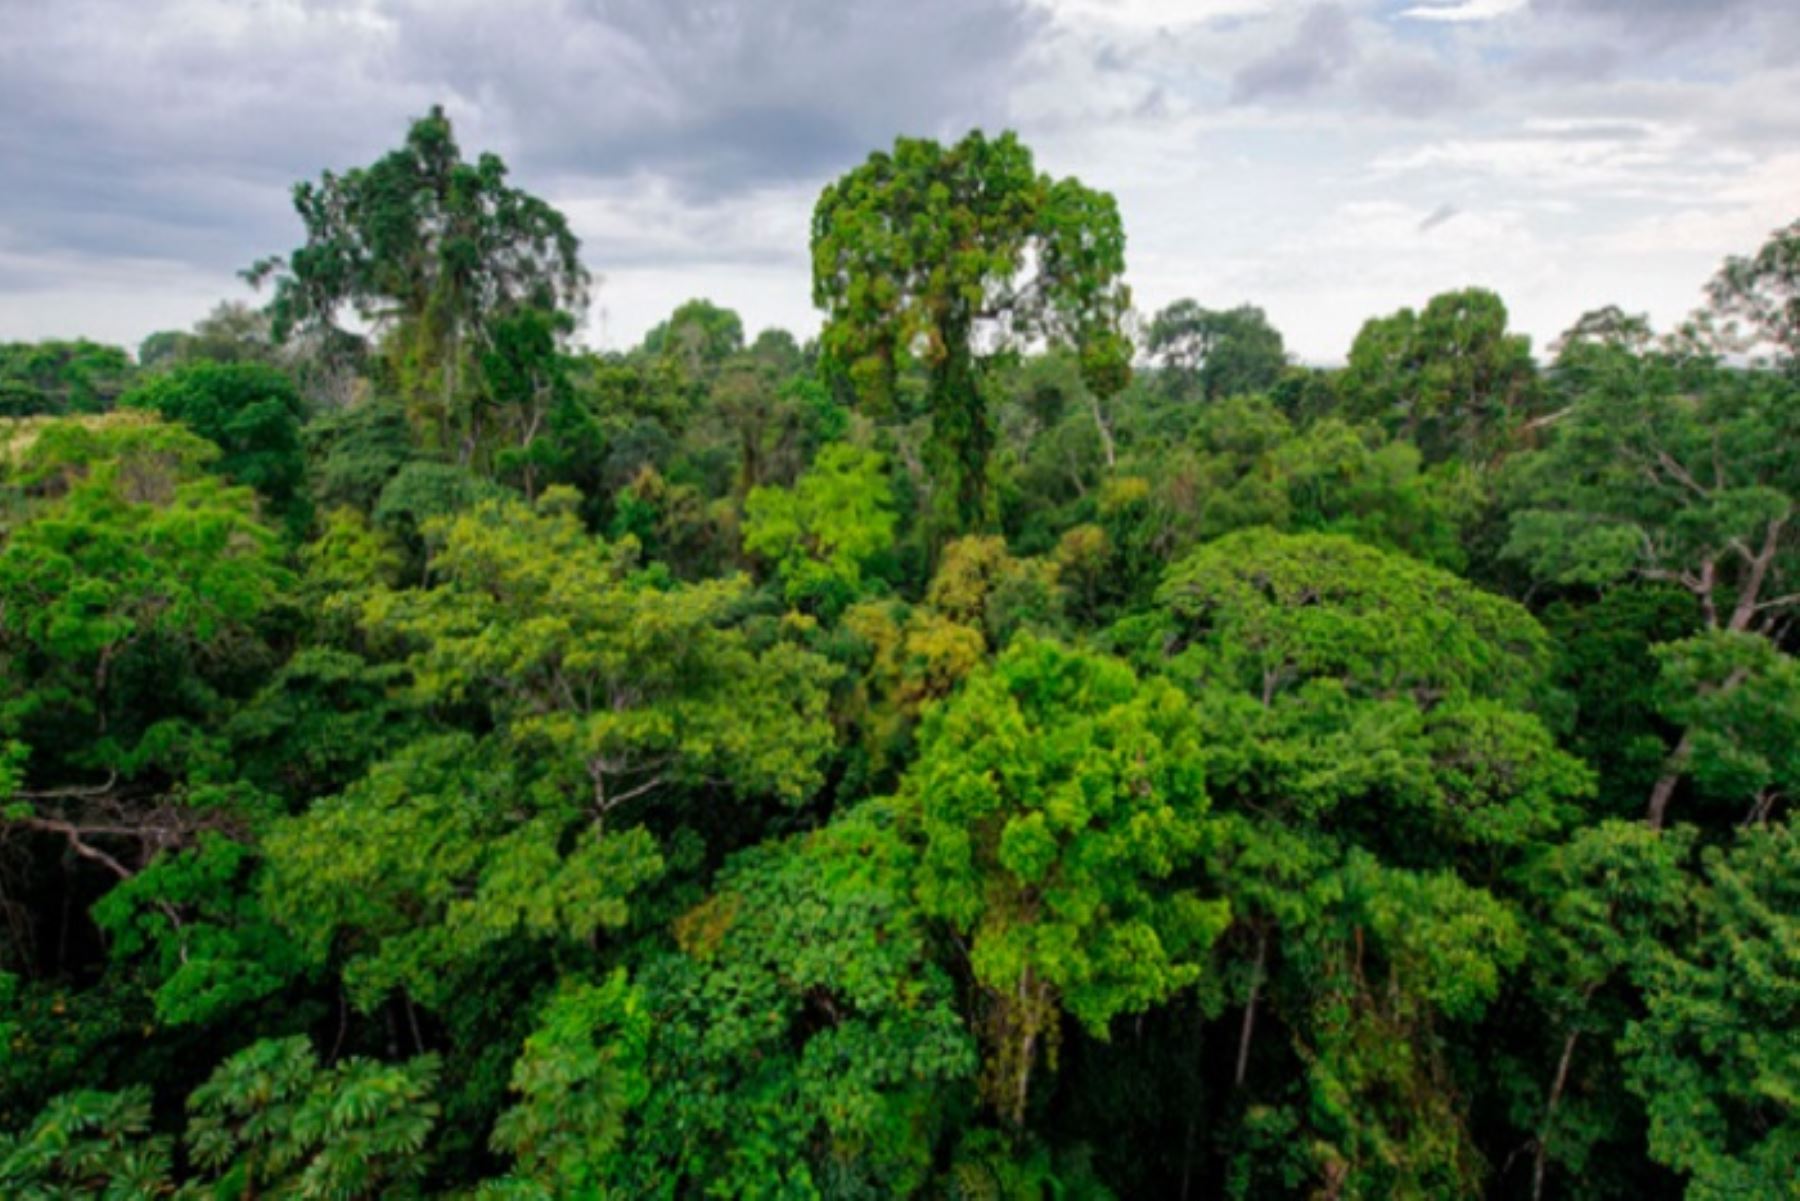 La principal preocupación de los peruanos, en especial los que viven en la Amazonía, es proteger los bosques y reducir la deforestación. Foto: ANDINA/difusión.